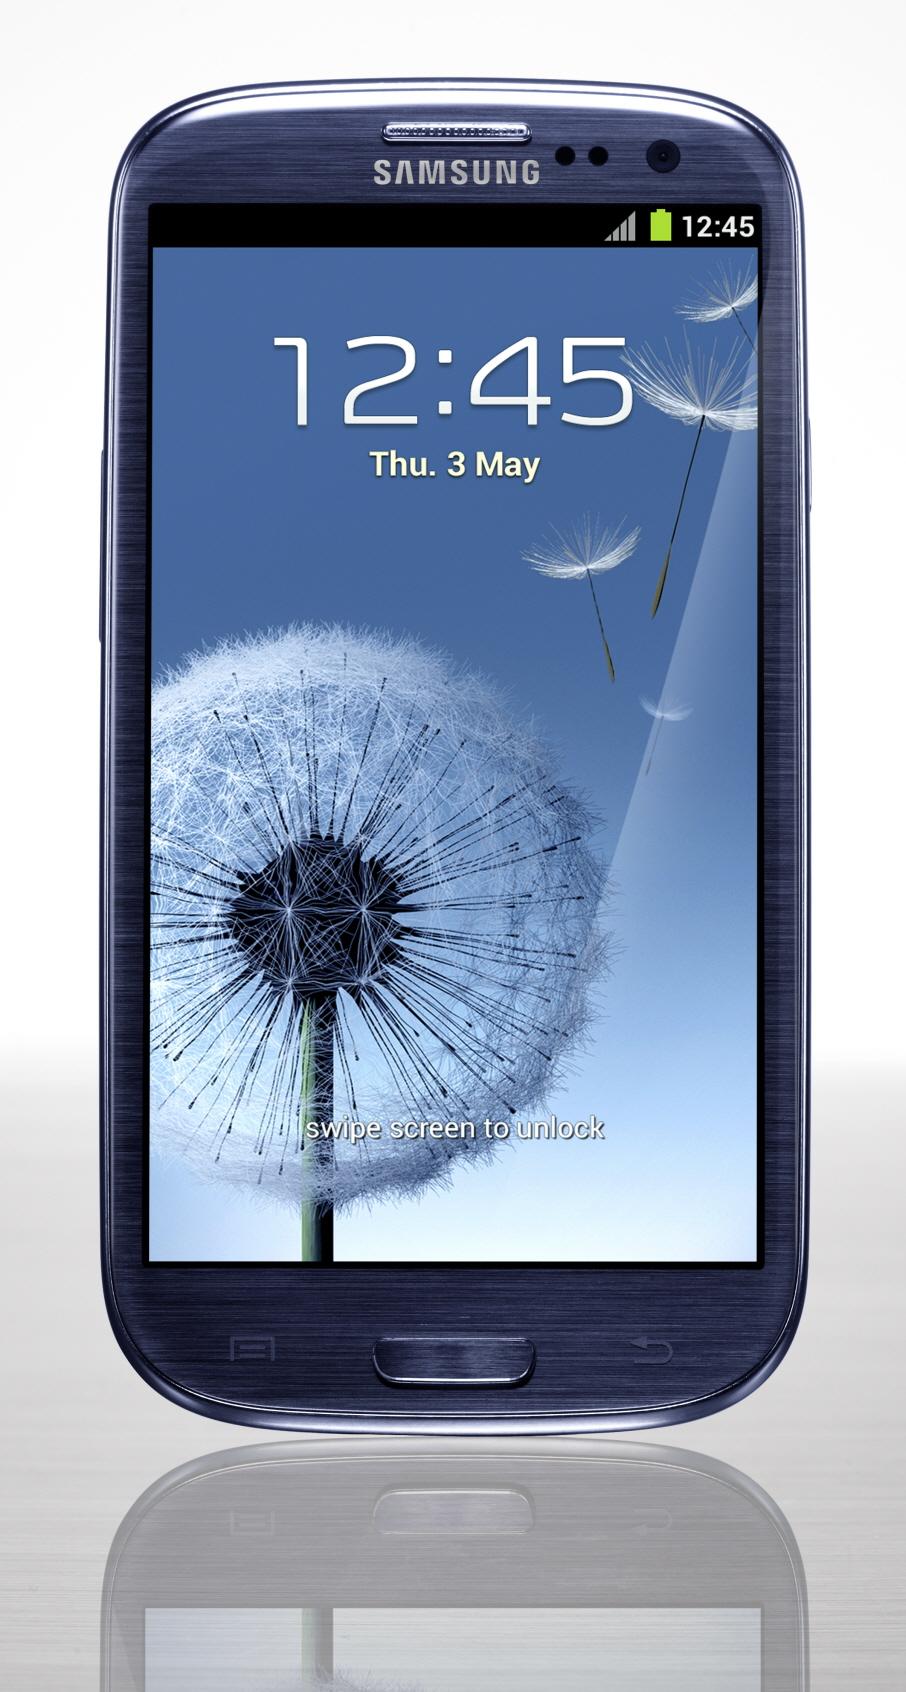 Det er ventet at ett av produktene blir en Windows-versjon av Galaxy S III.